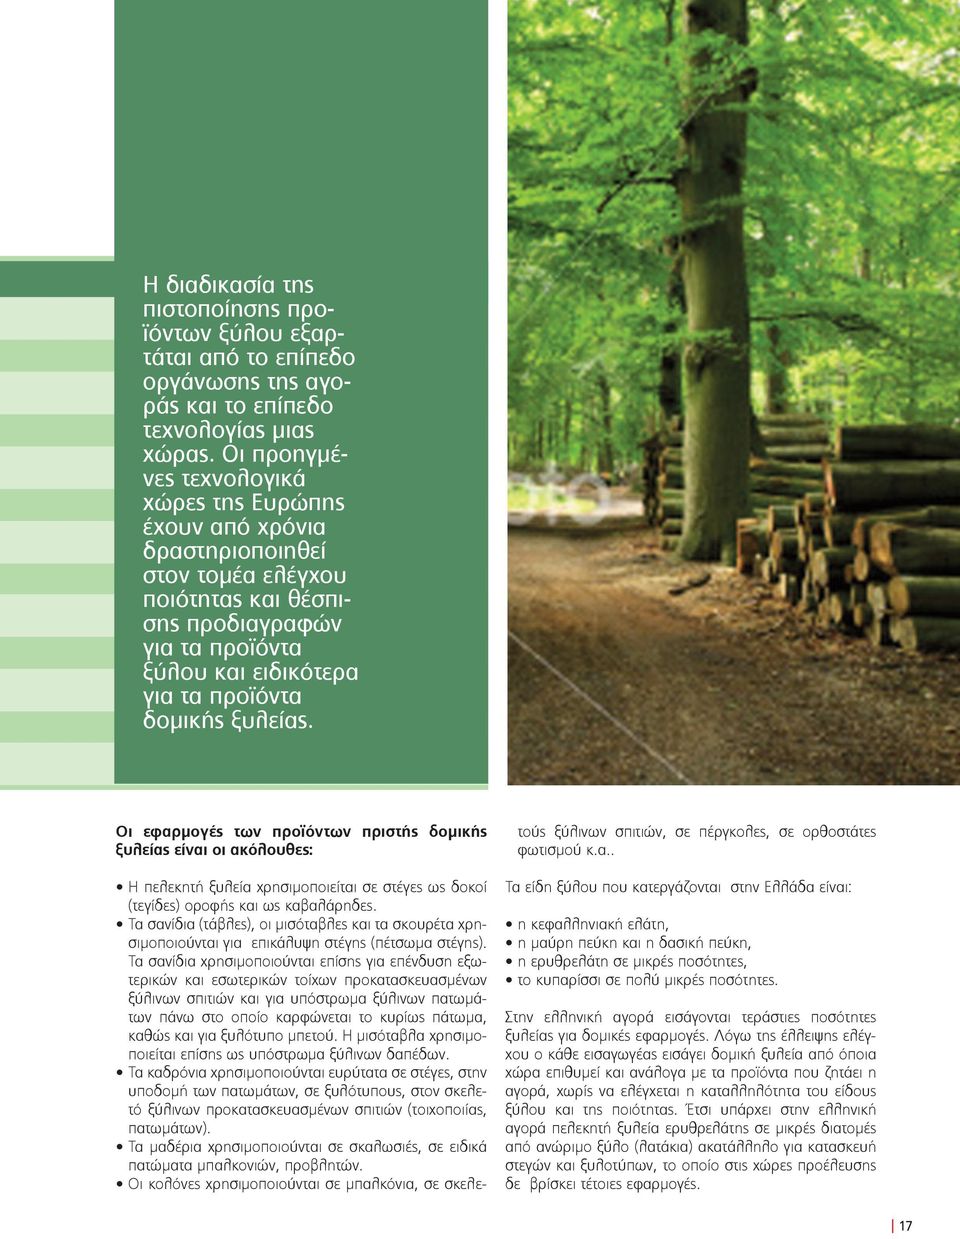 ξυλείας. Οι εφαρμογές των προϊόντων πριστής δομικής ξυλείας είναι οι ακόλουθες: Η πελεκητή ξυλεία χρησιμοποιείται σε στέγες ως δοκοί (τεγίδες) οροφής και ως καβαλάρηδες.